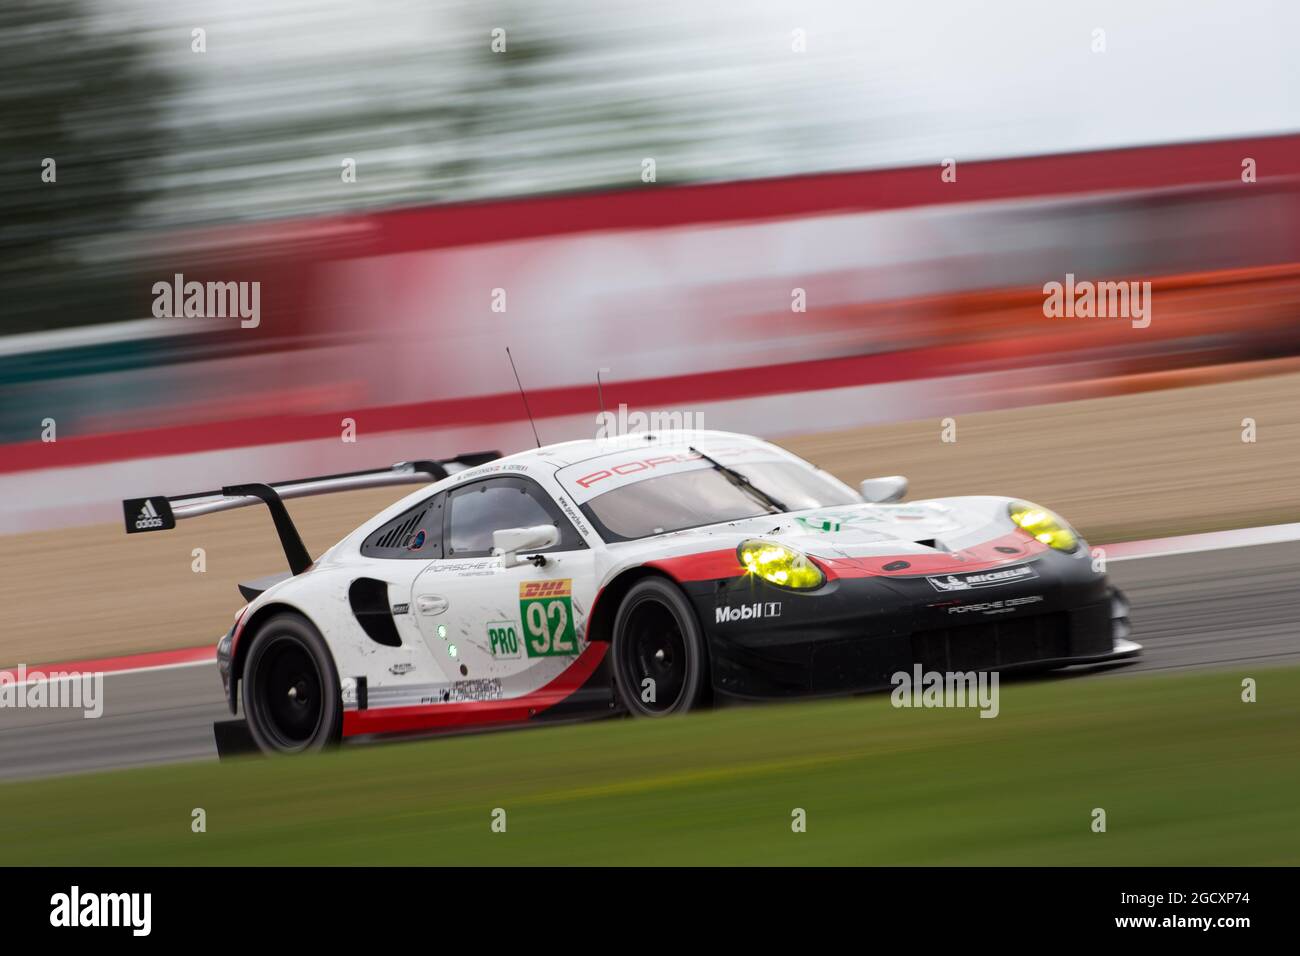 Michael Christensen (DEN) / Kevin estre (FRA) #92 équipe Porsche GT, Porsche 911 RSR. Championnat du monde d'endurance FIA, Round 4, Dimanche 16 juillet 2017. Nurburgring, Allemagne. Banque D'Images